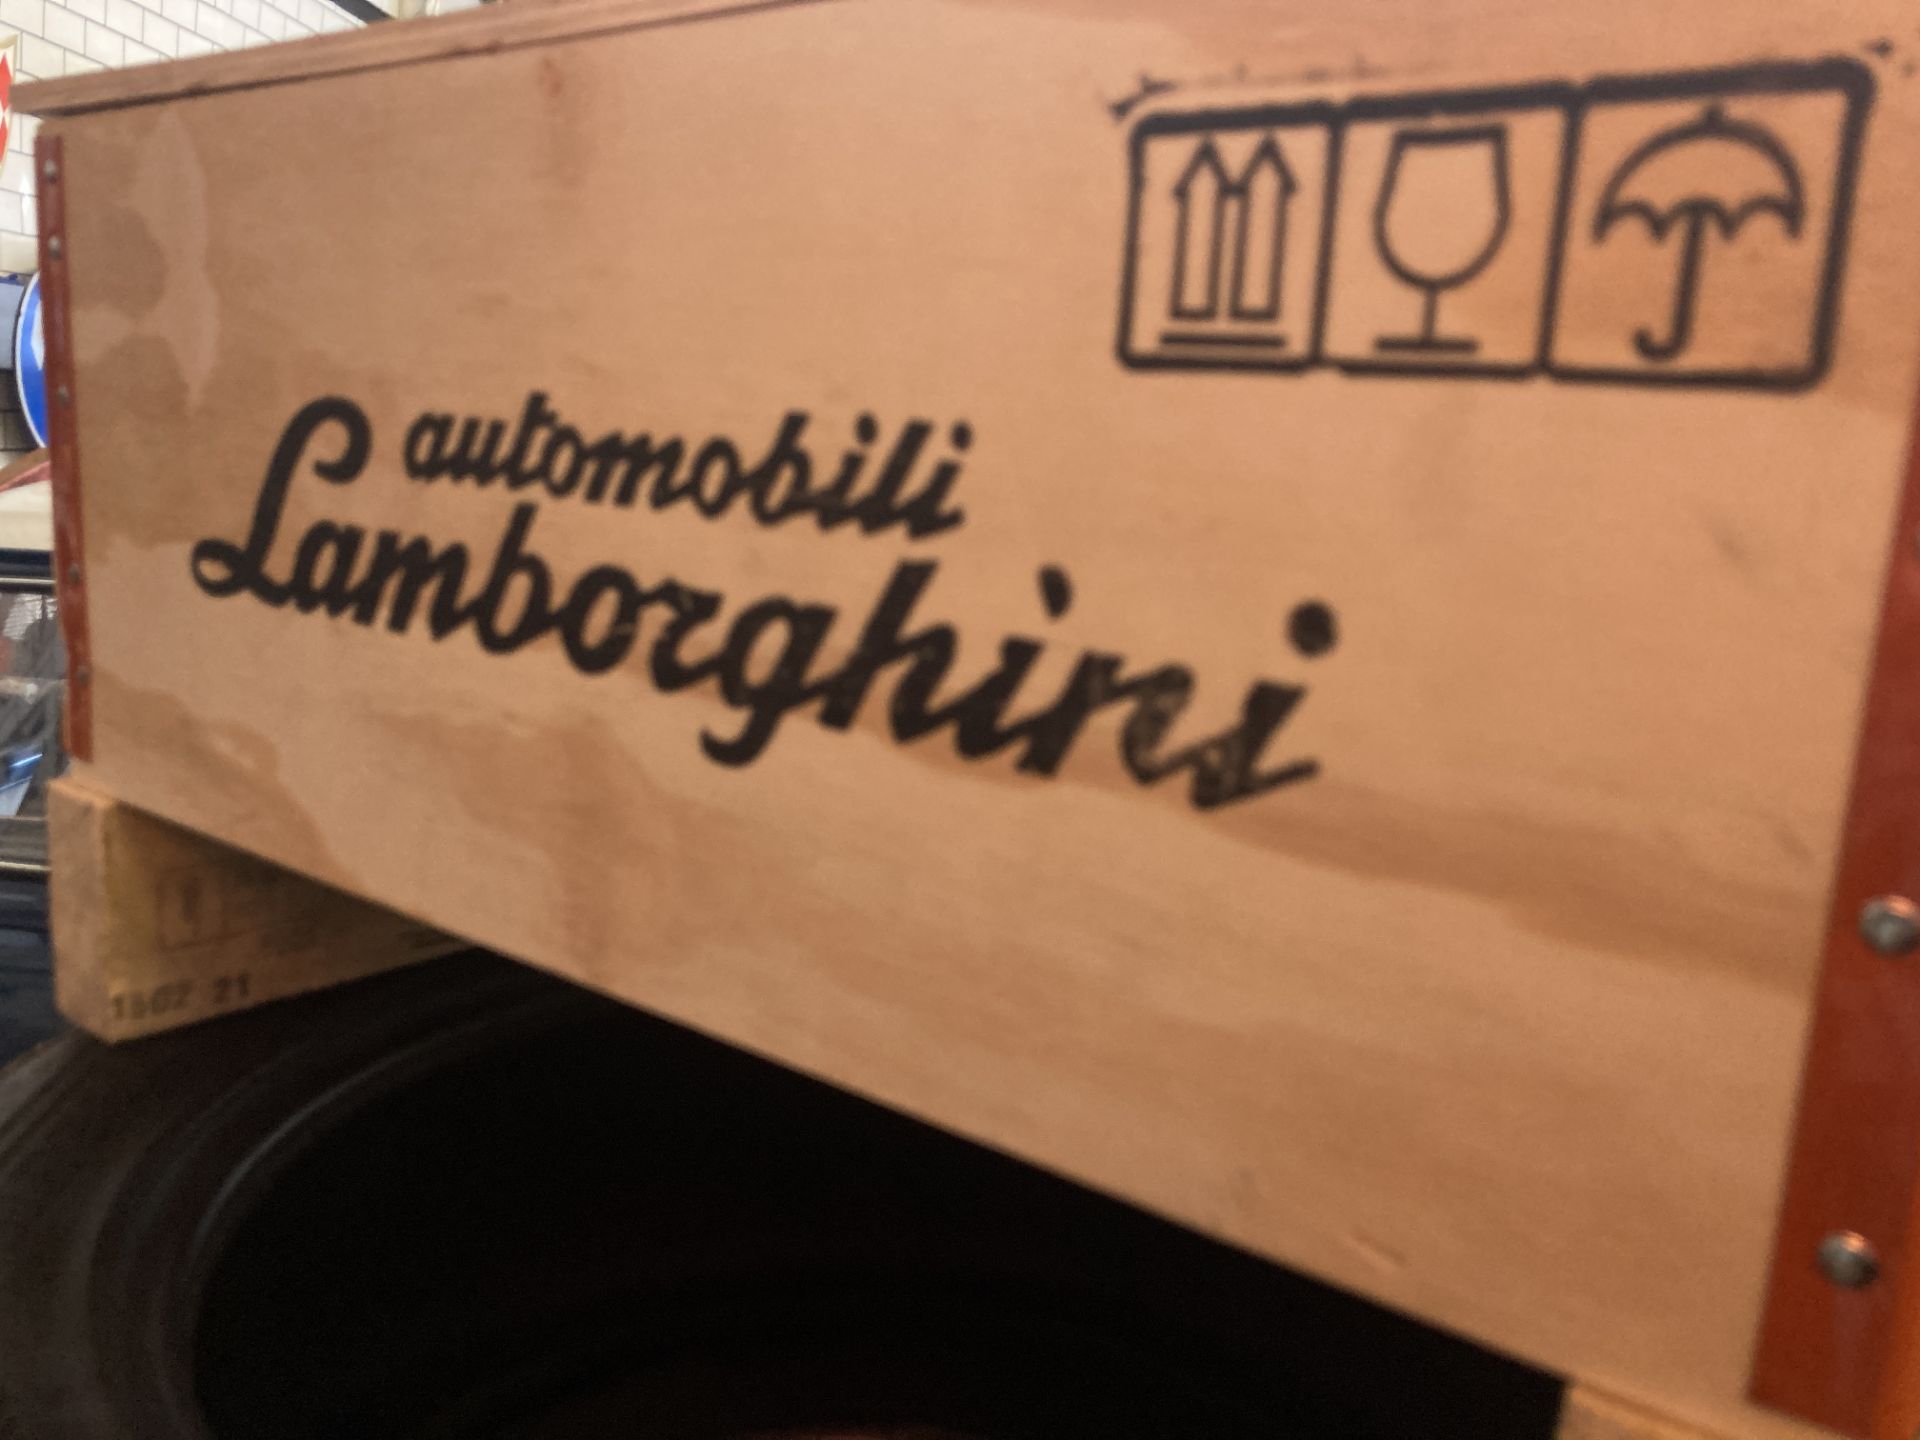 Genuine Lamborghini Wooden Parts Crate - Image 3 of 5